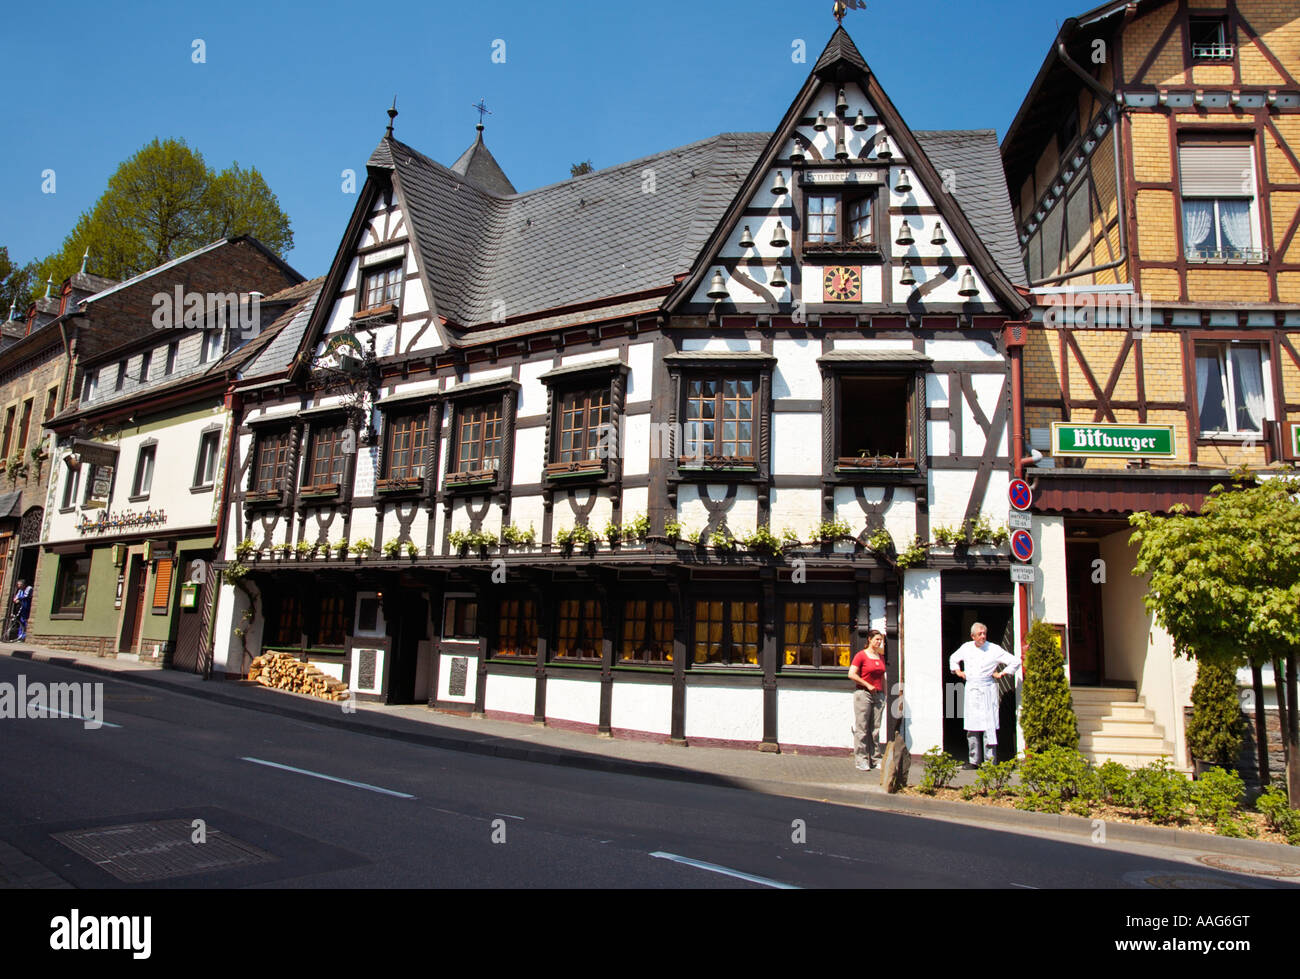 Alte halbe Fachwerkhaus verwendet als Restaurant Taverne in Altenahr, Ahrtal, Rheinland-Pfalz, Deutschland, Europa Stockfoto